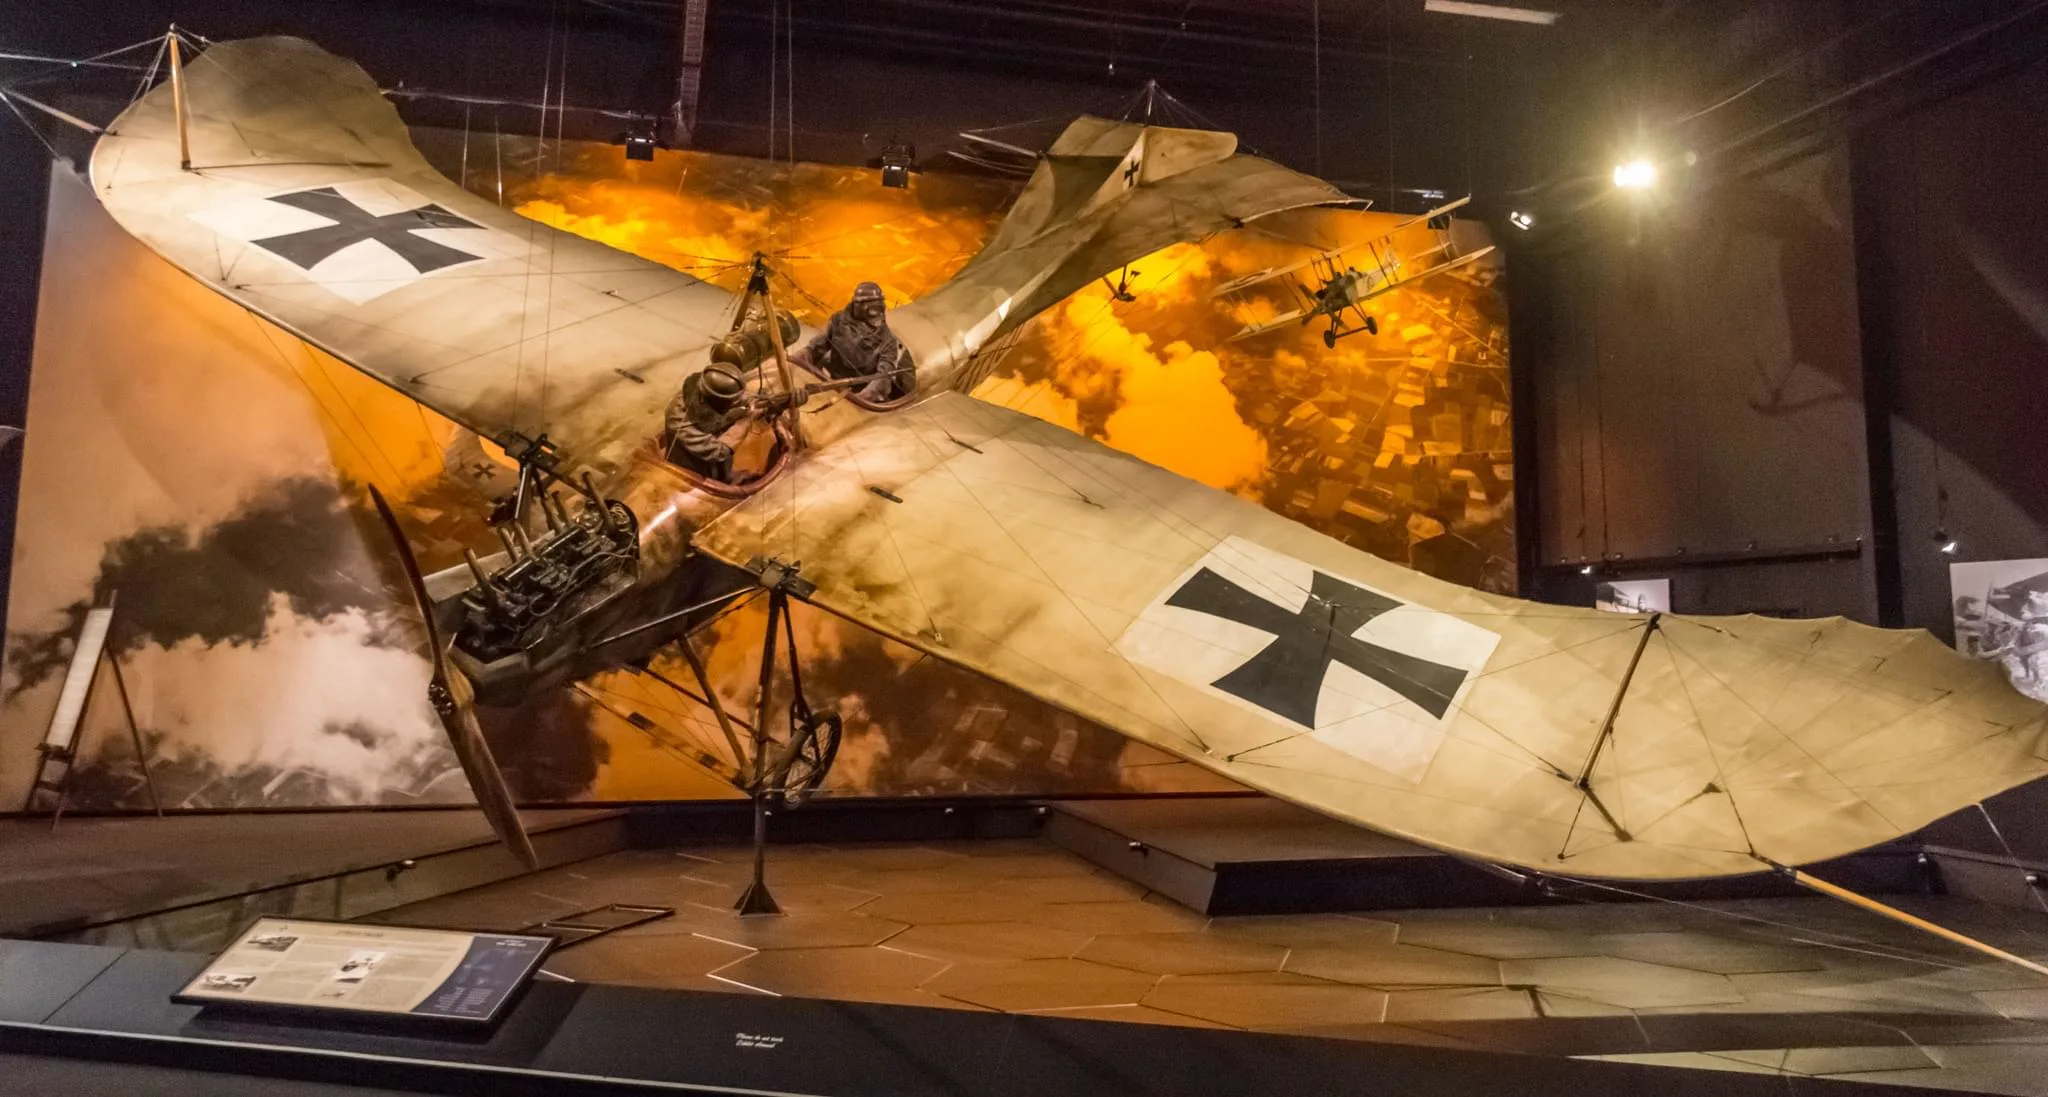 172 photos of WWI Aircraft